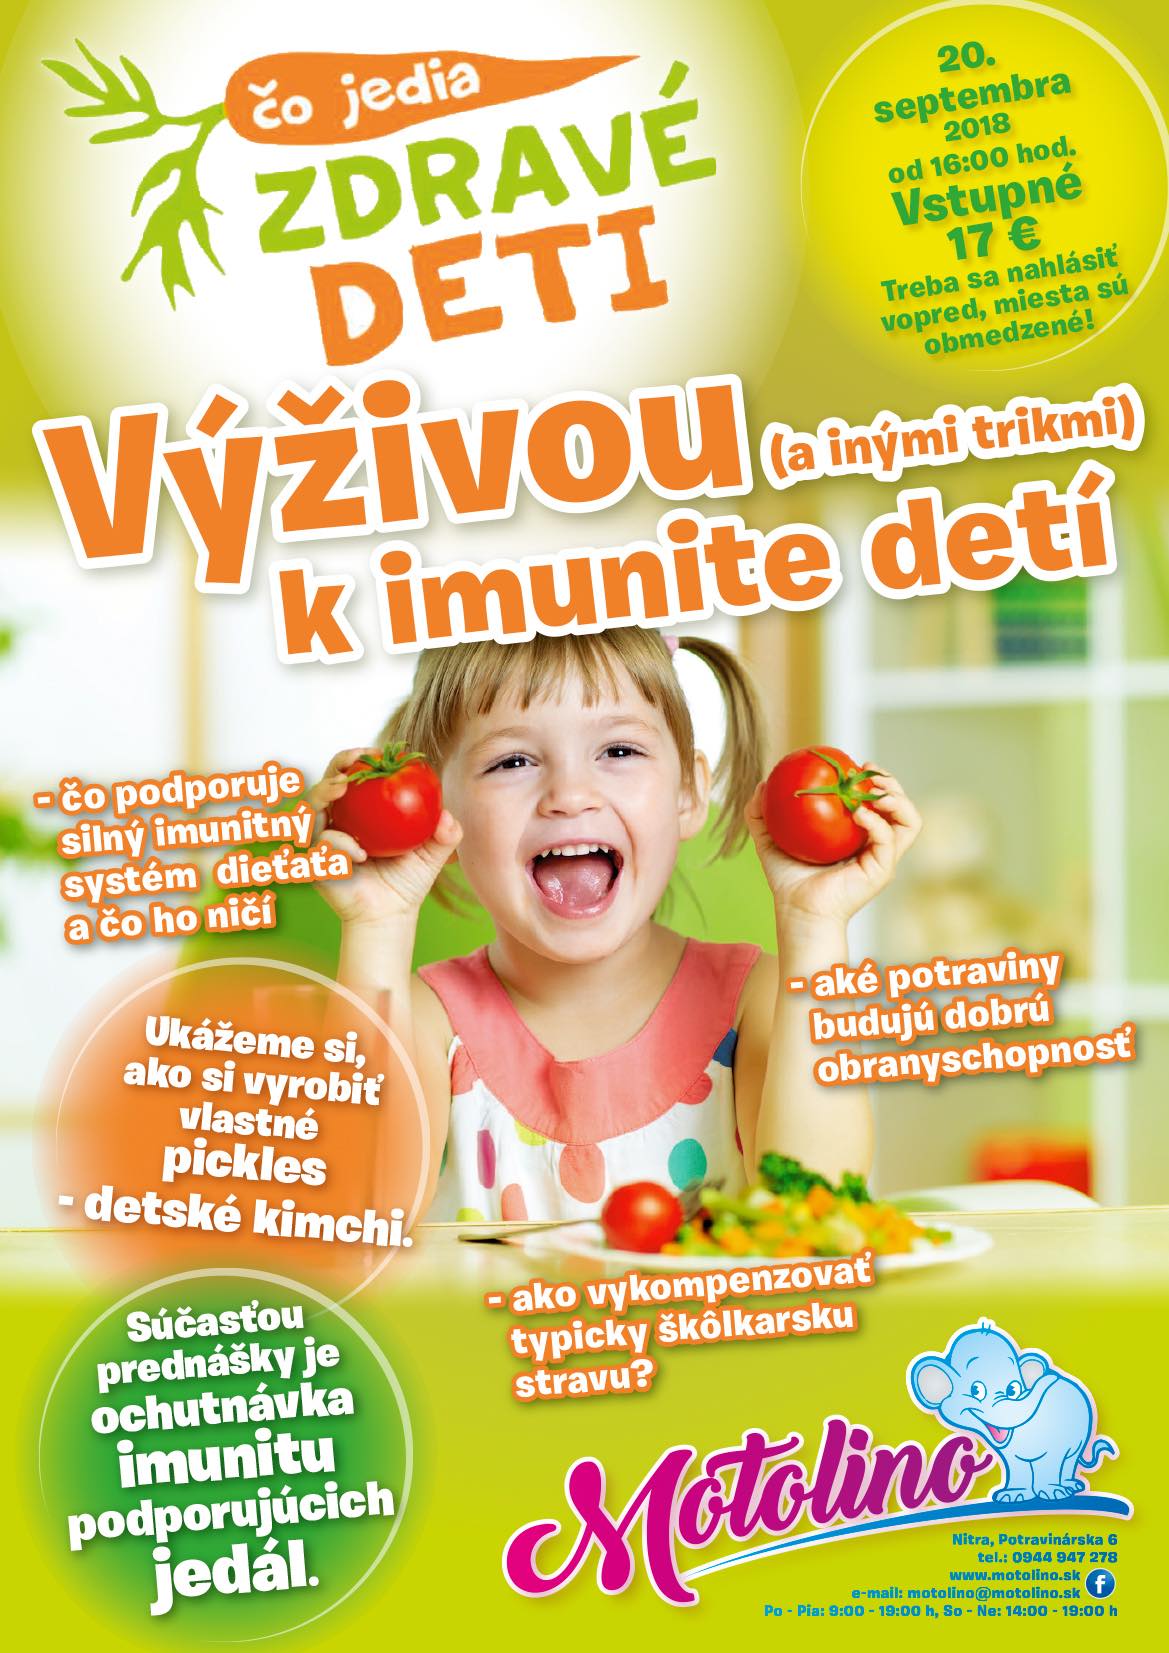 Co jedia zdrave deti_imunita deti - prednaska